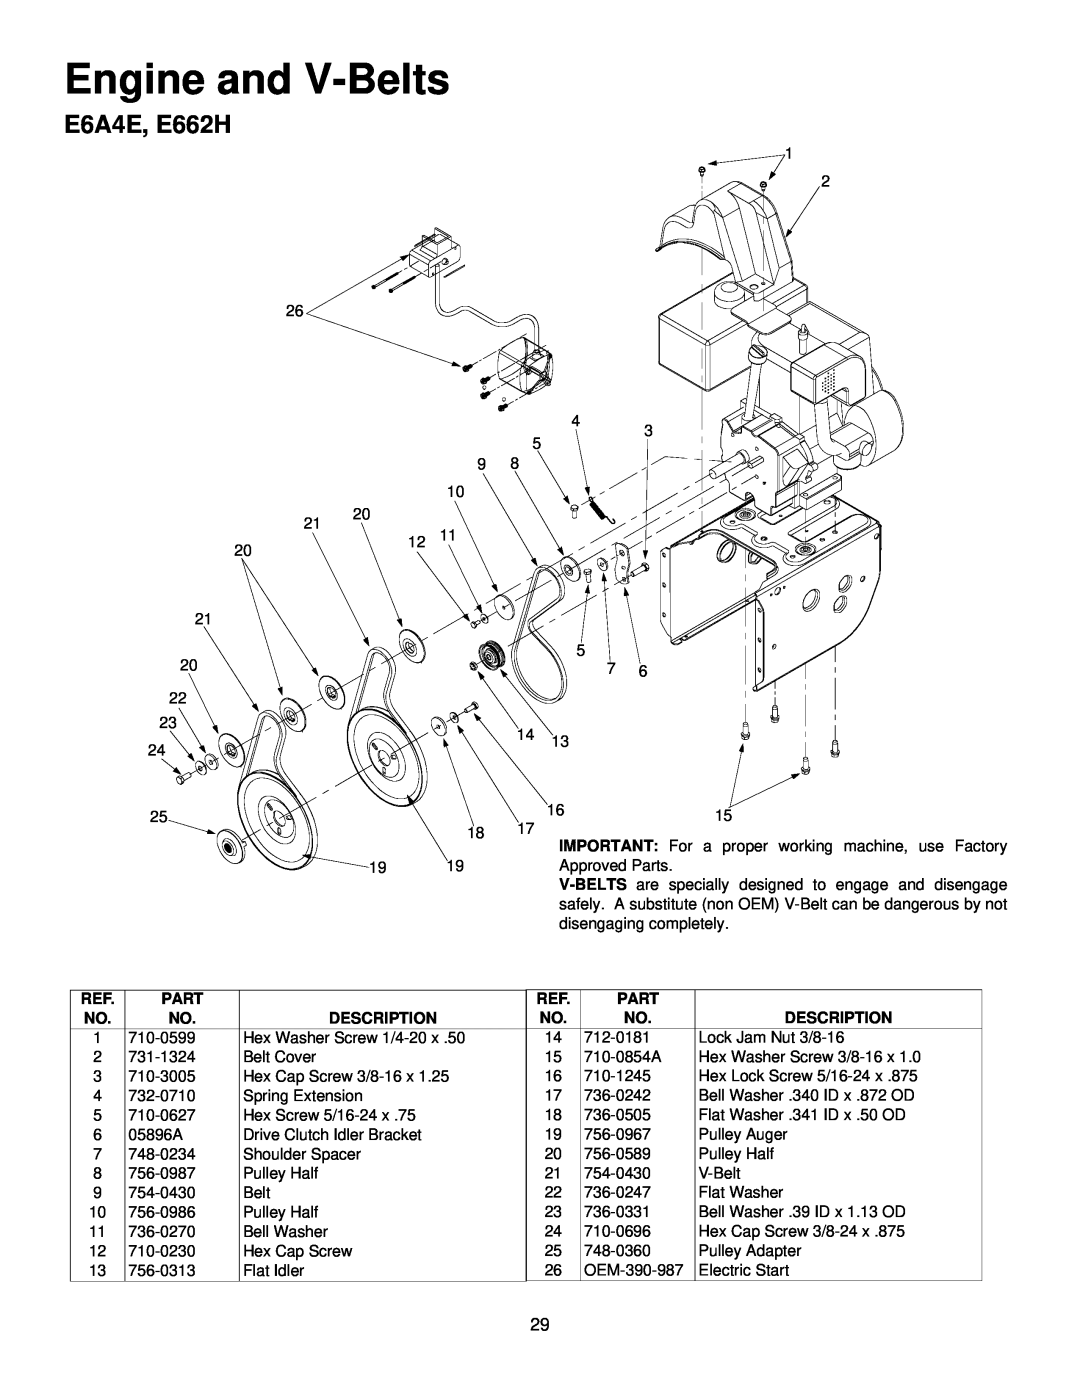 MTD E642E, E664F, E644E manual E6A4E, E662H, Engine and V-Belts 